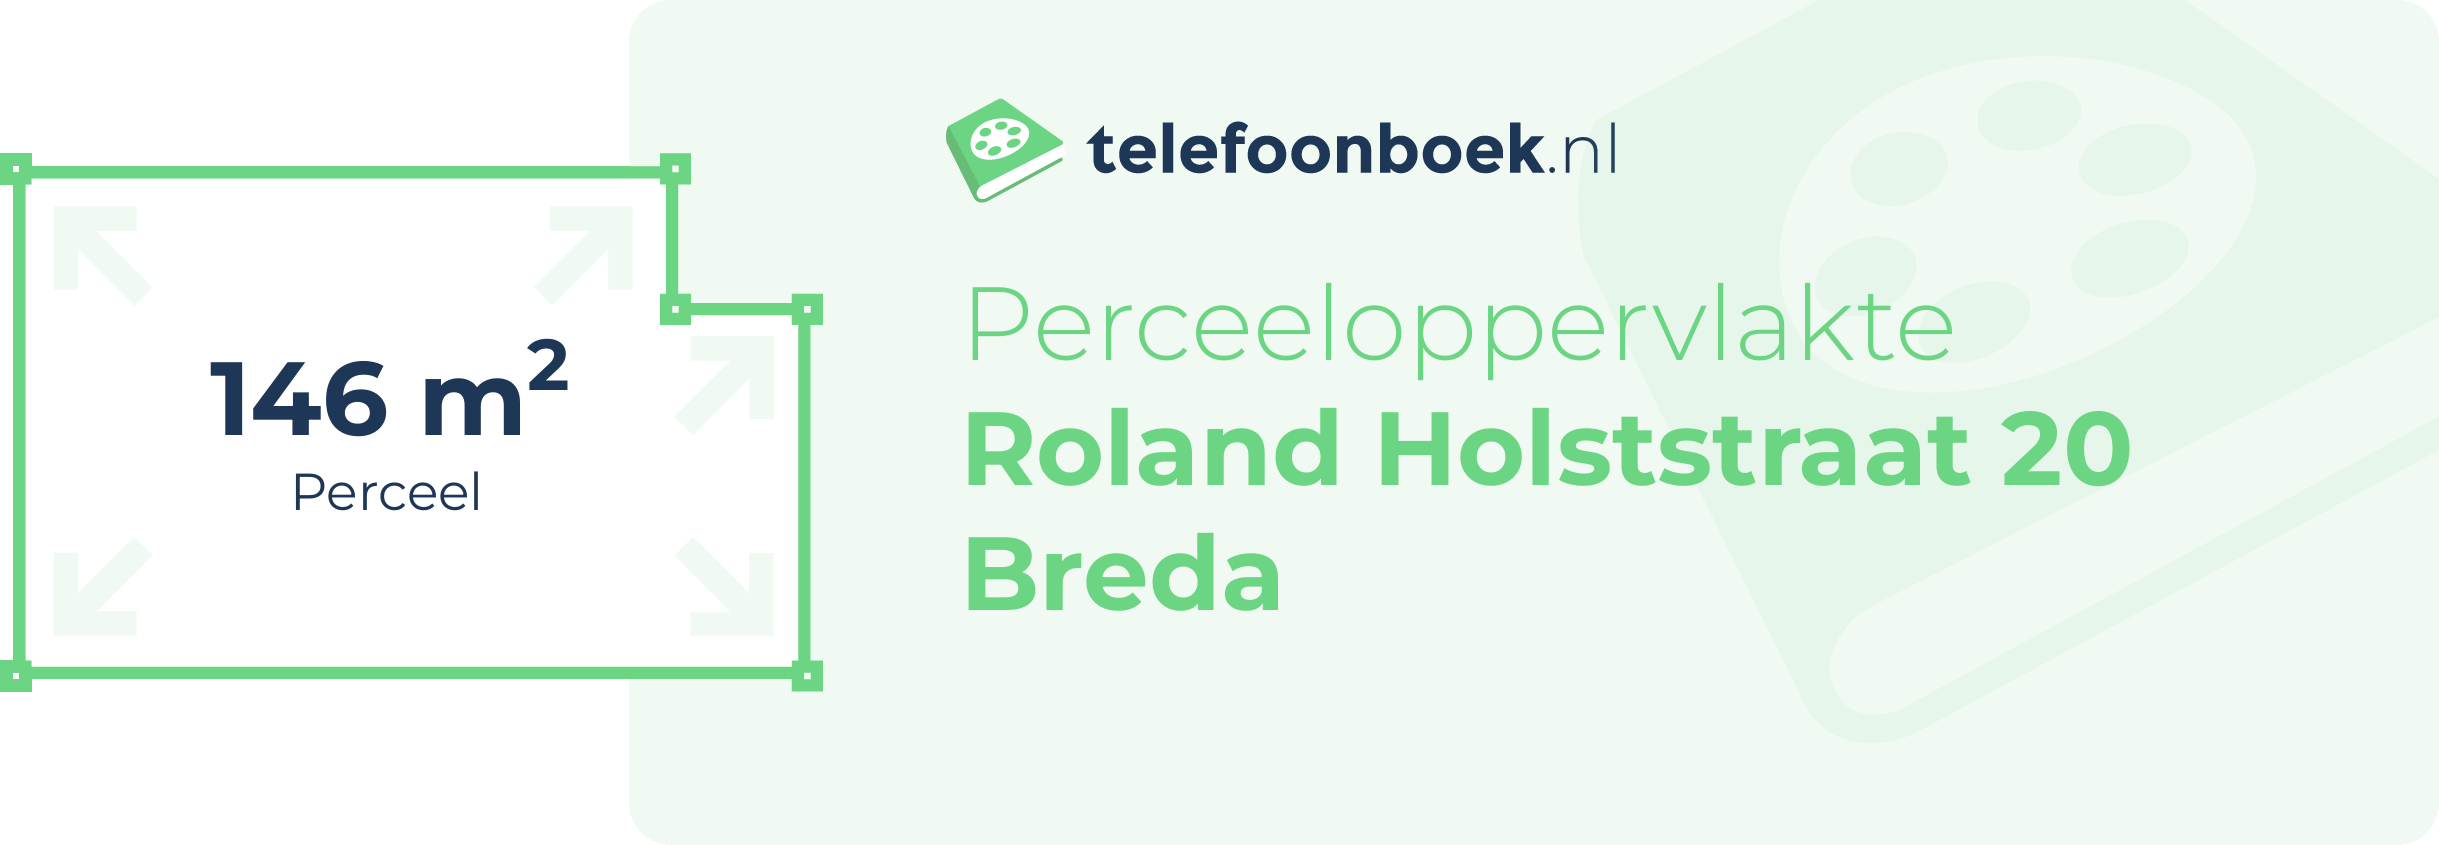 Perceeloppervlakte Roland Holststraat 20 Breda